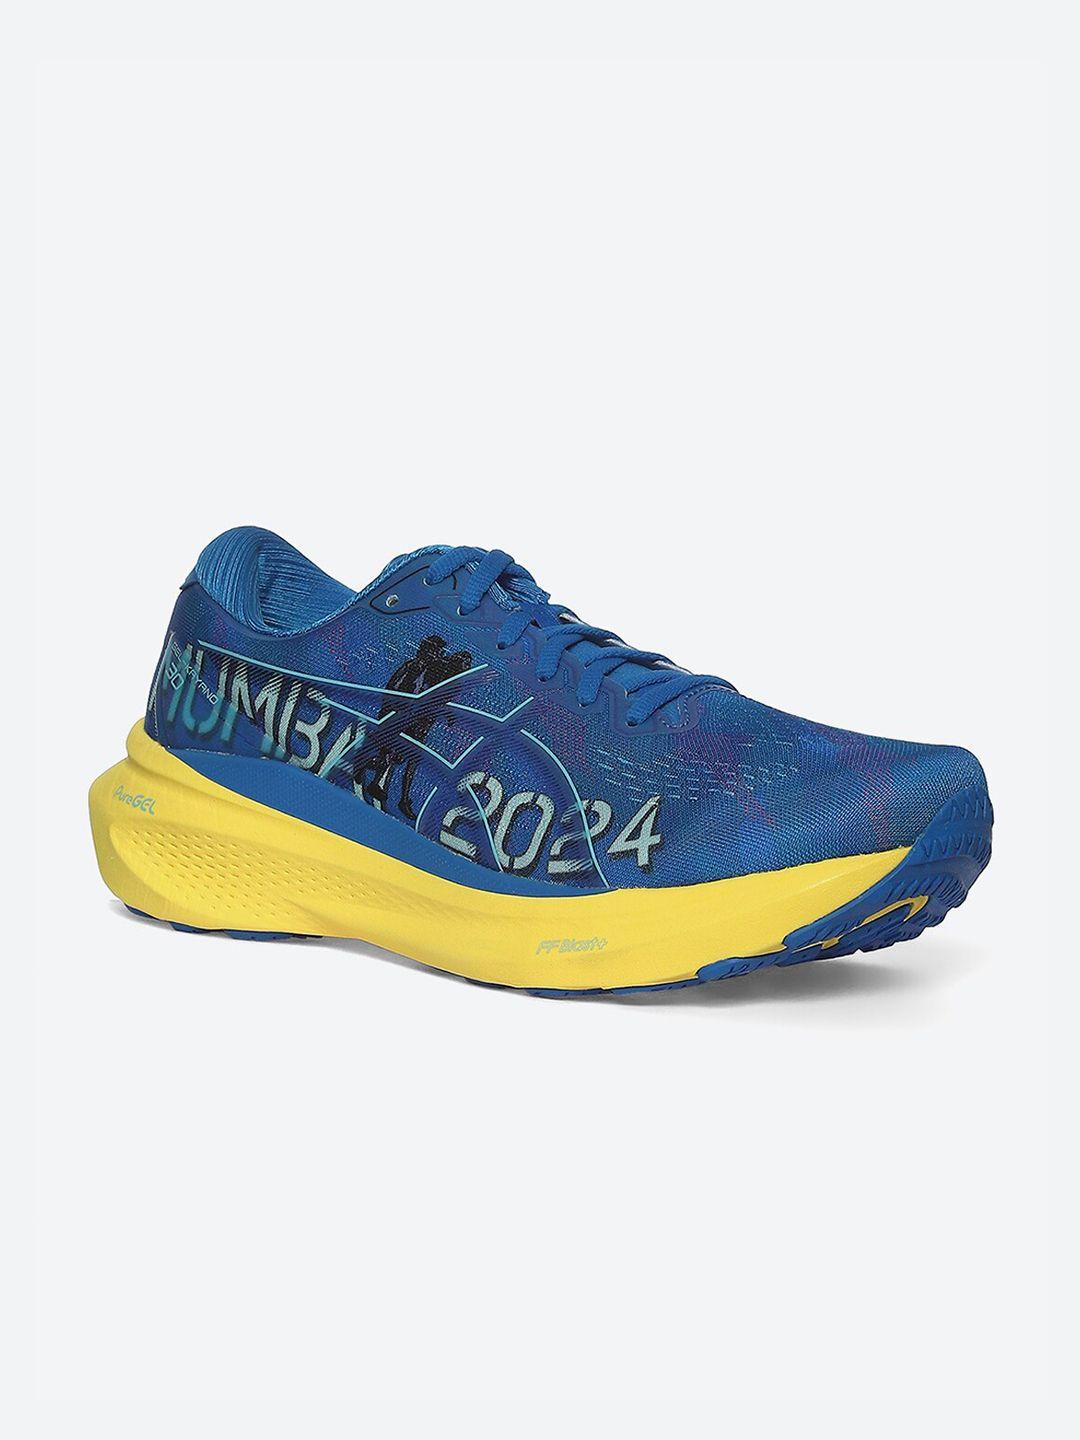 asics men gel- kayano 24 running sports shoes